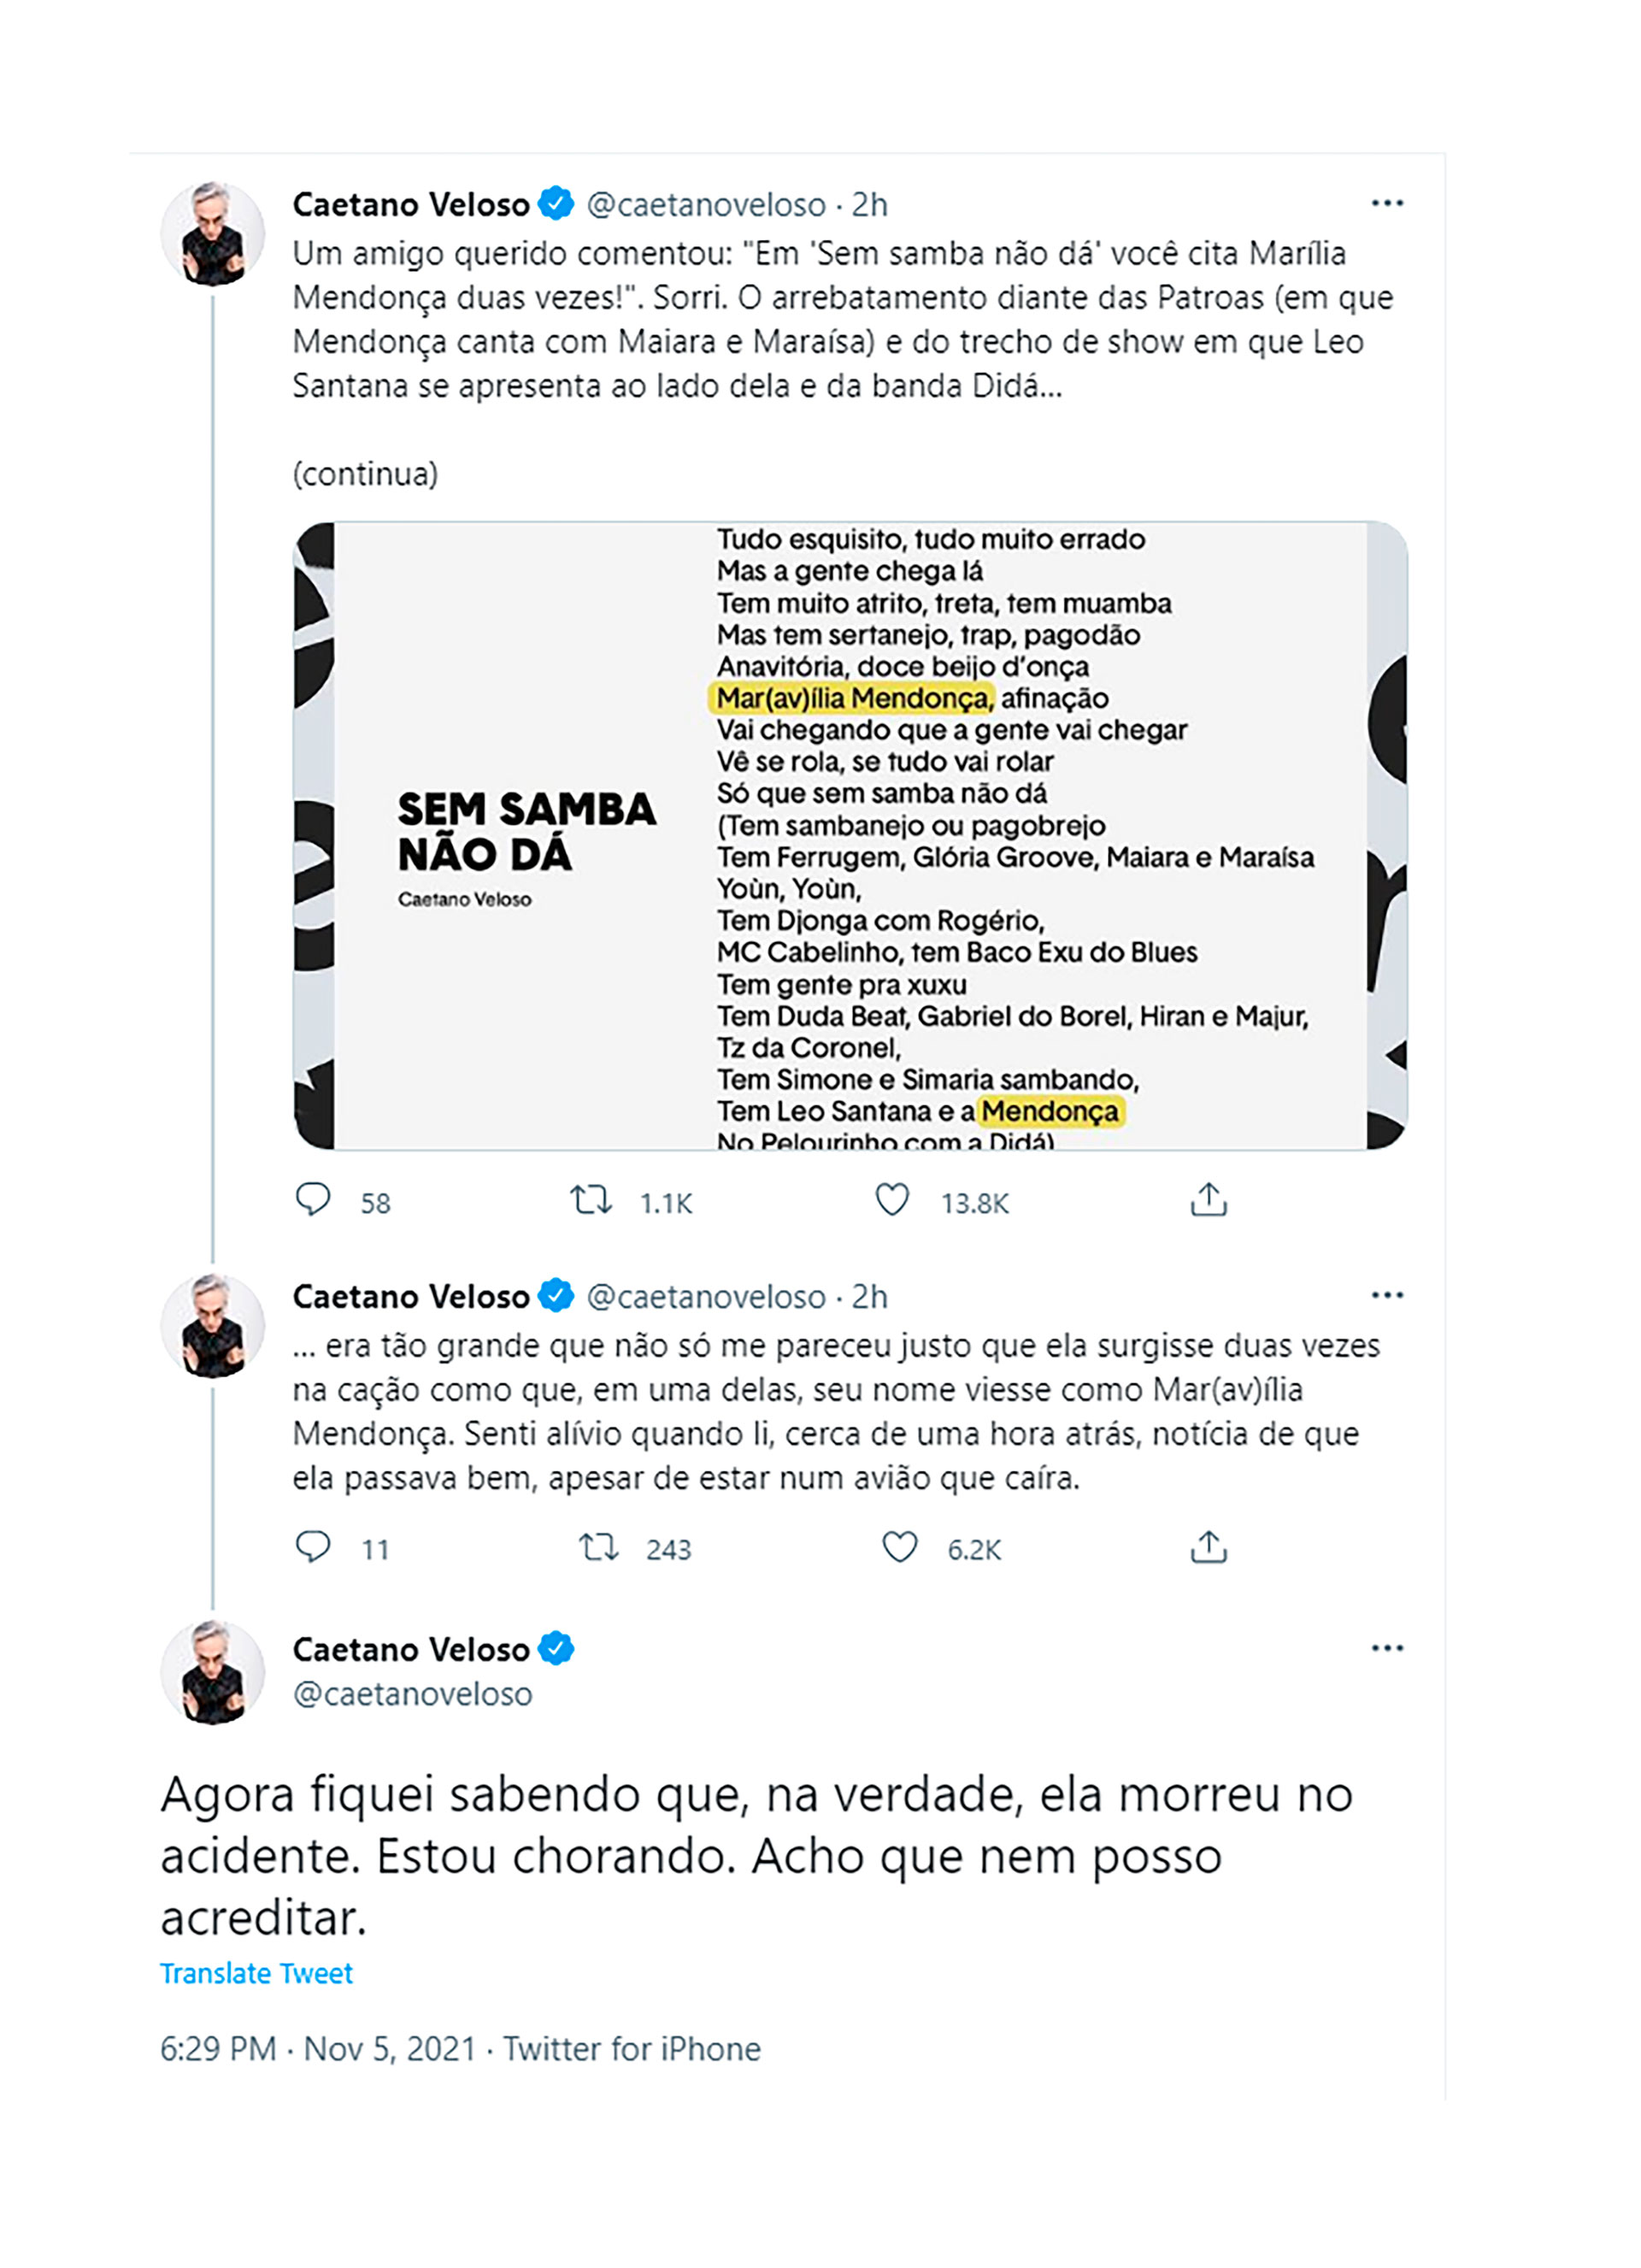 El sentido mensaje de Caetano Veloso